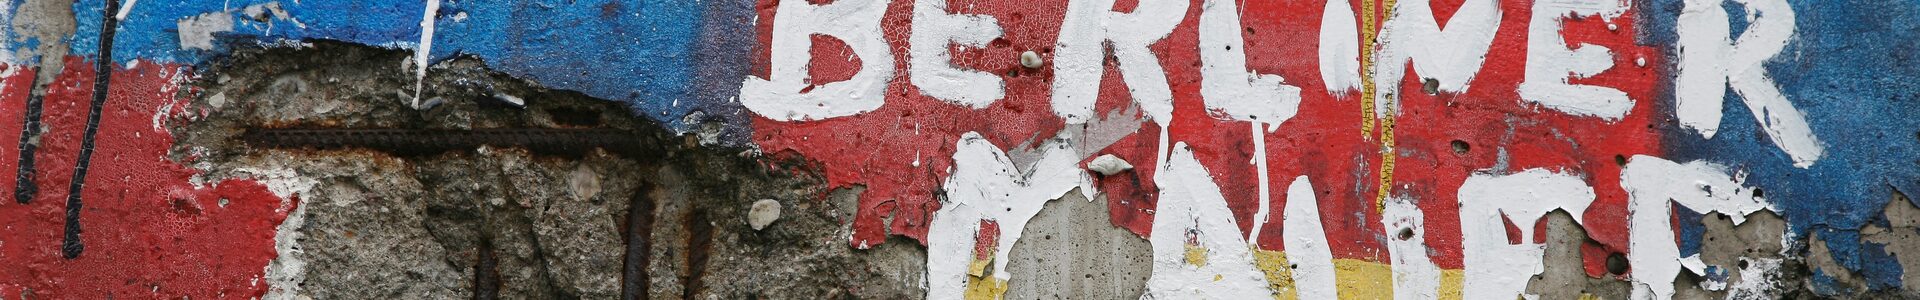 Ausschnitt der Berliner Mauer